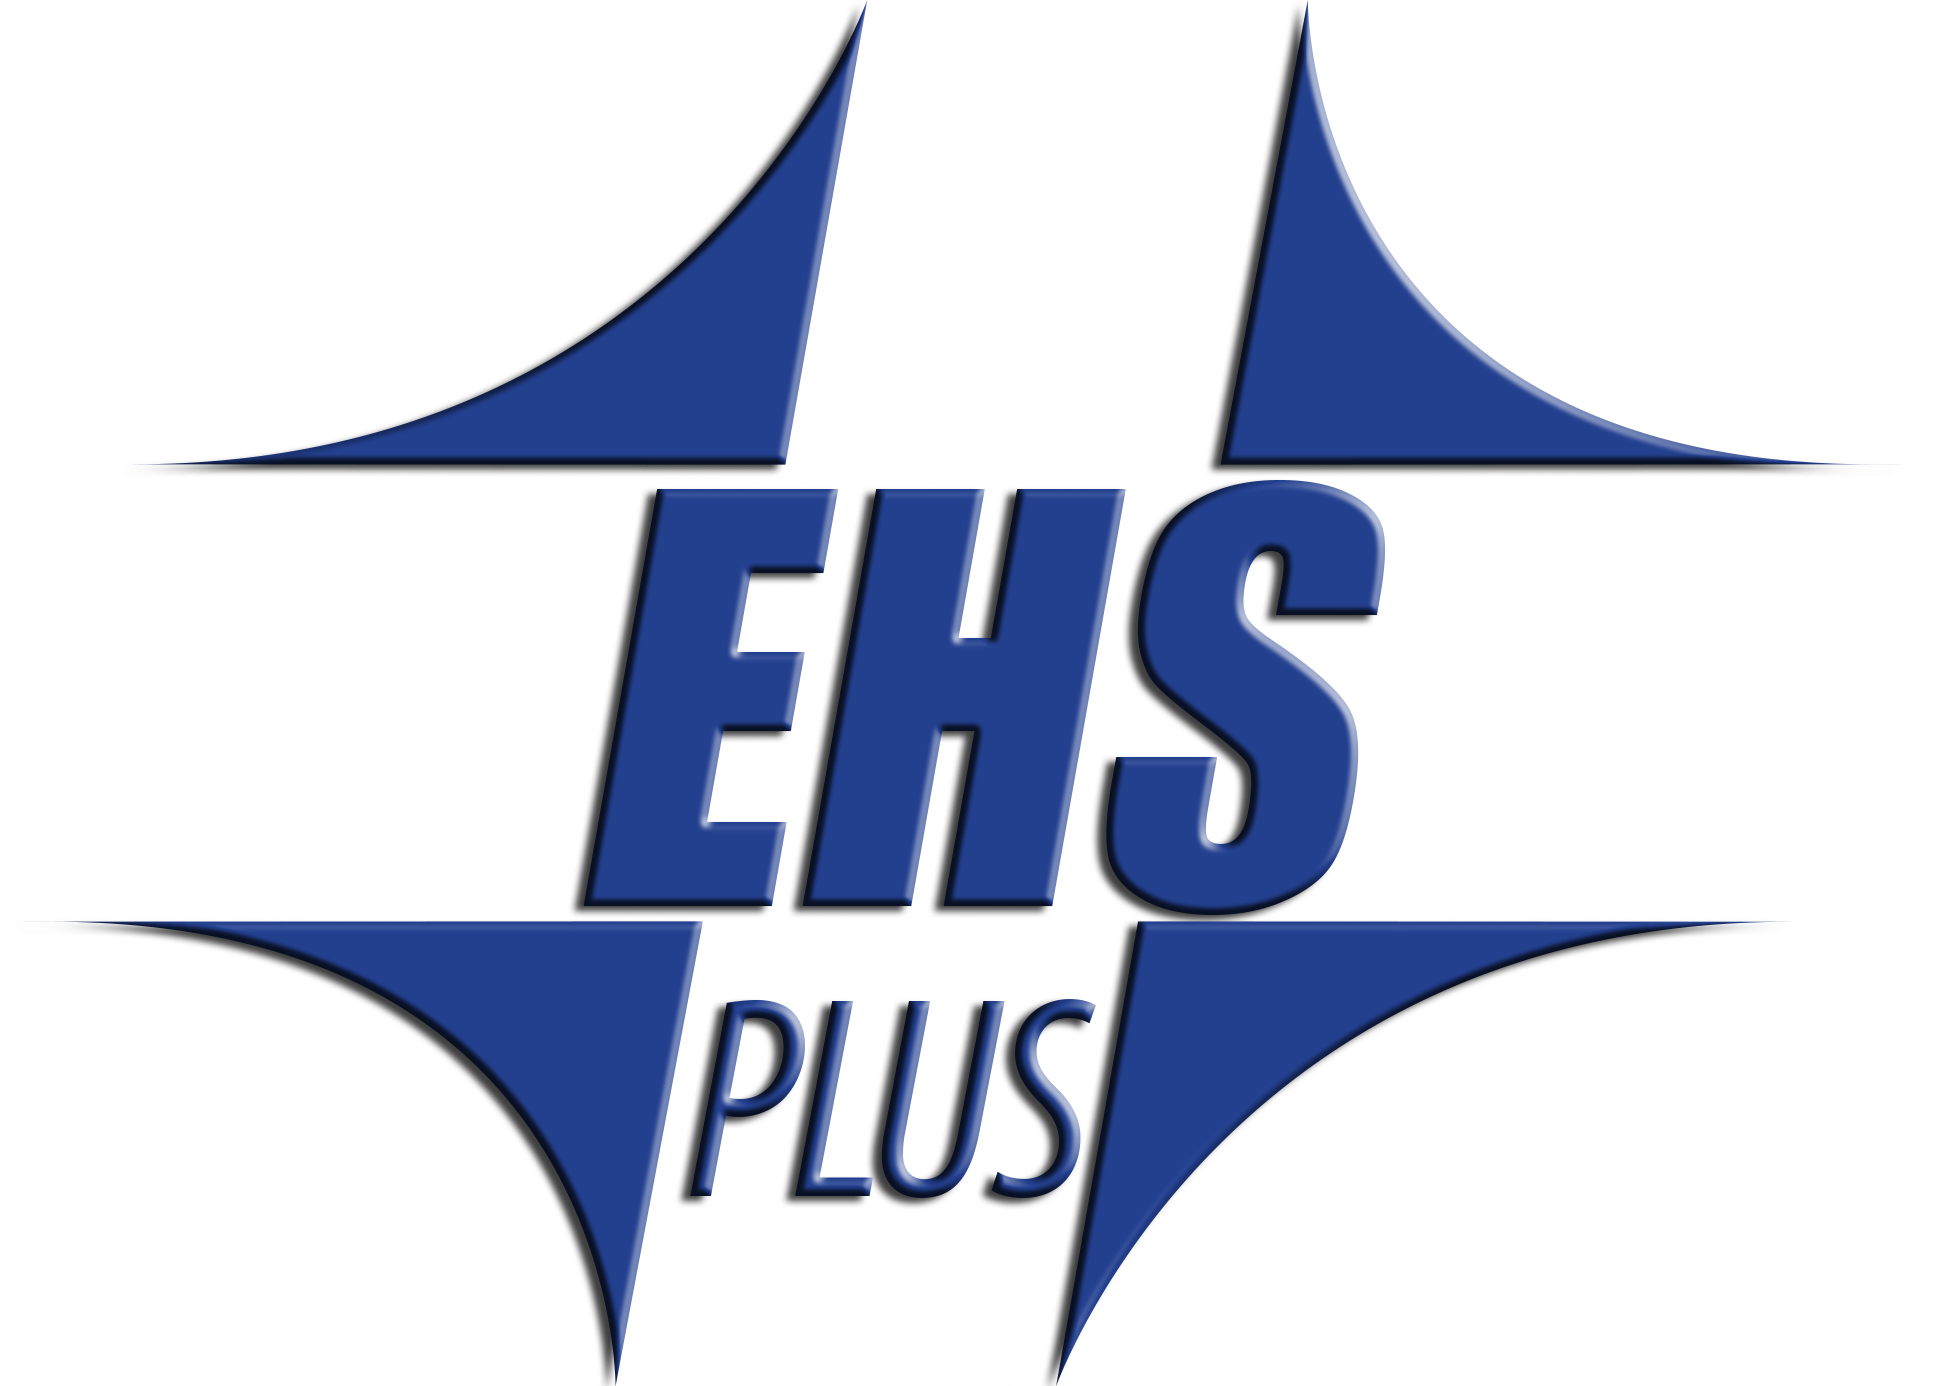 EHS Plus